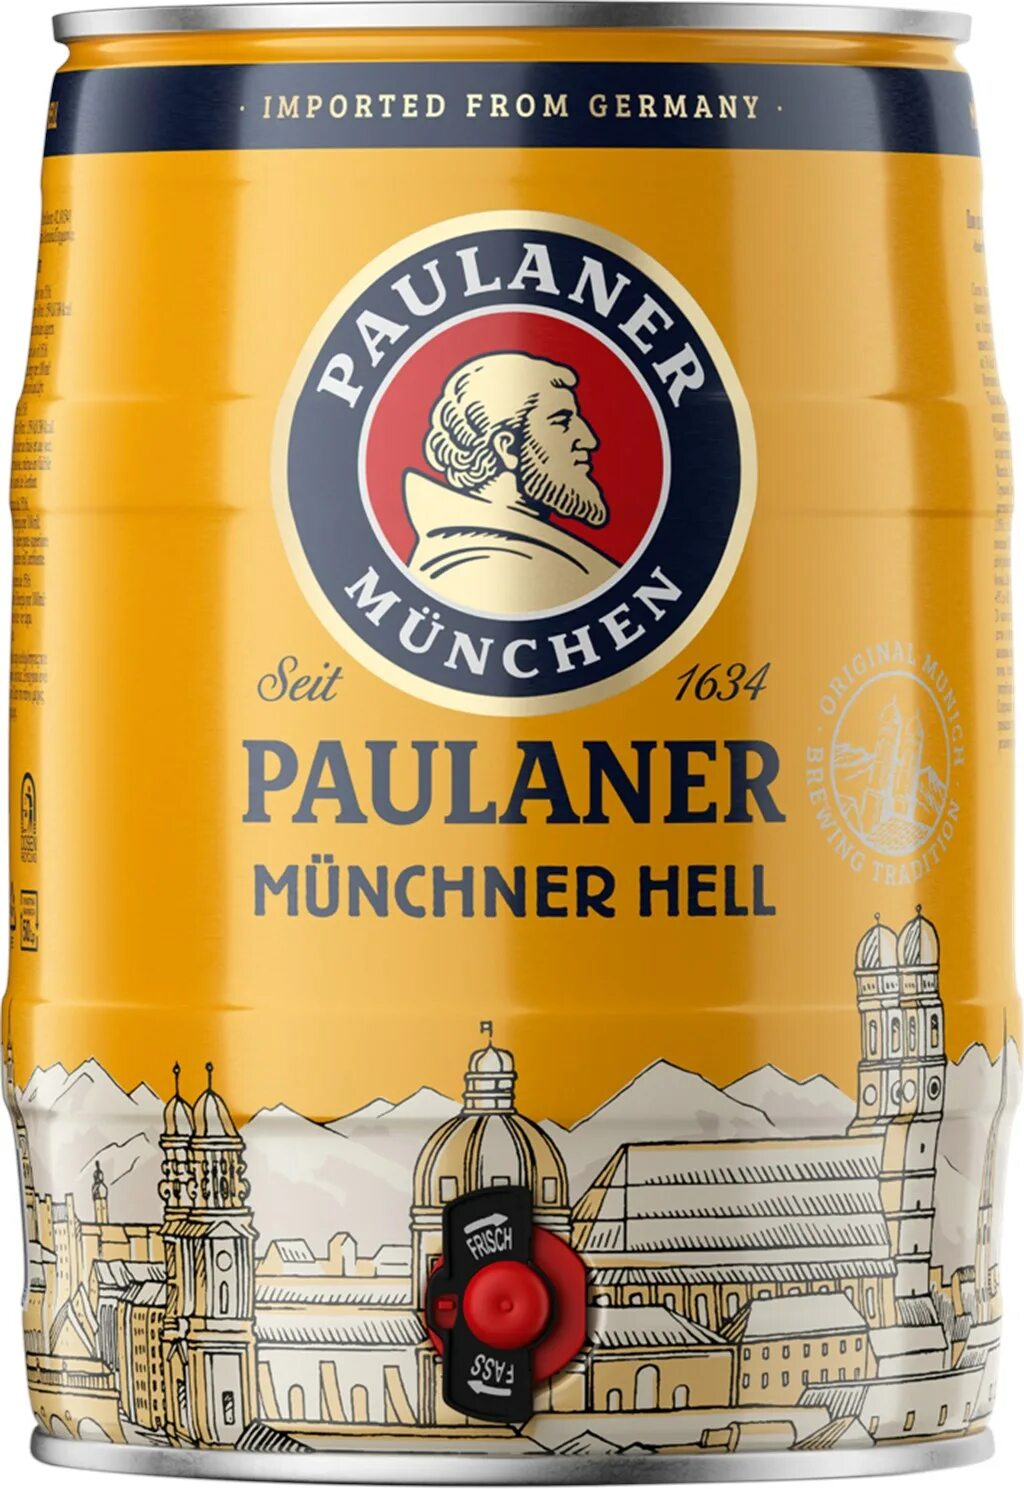 Пиво пауланер купить. Пиво Paulaner Original Munchner. Пиво Paulaner Munchen Hell. Пиво светлое Paulaner Munchner Hell. Пауланер пиво светлое фильтрованное.